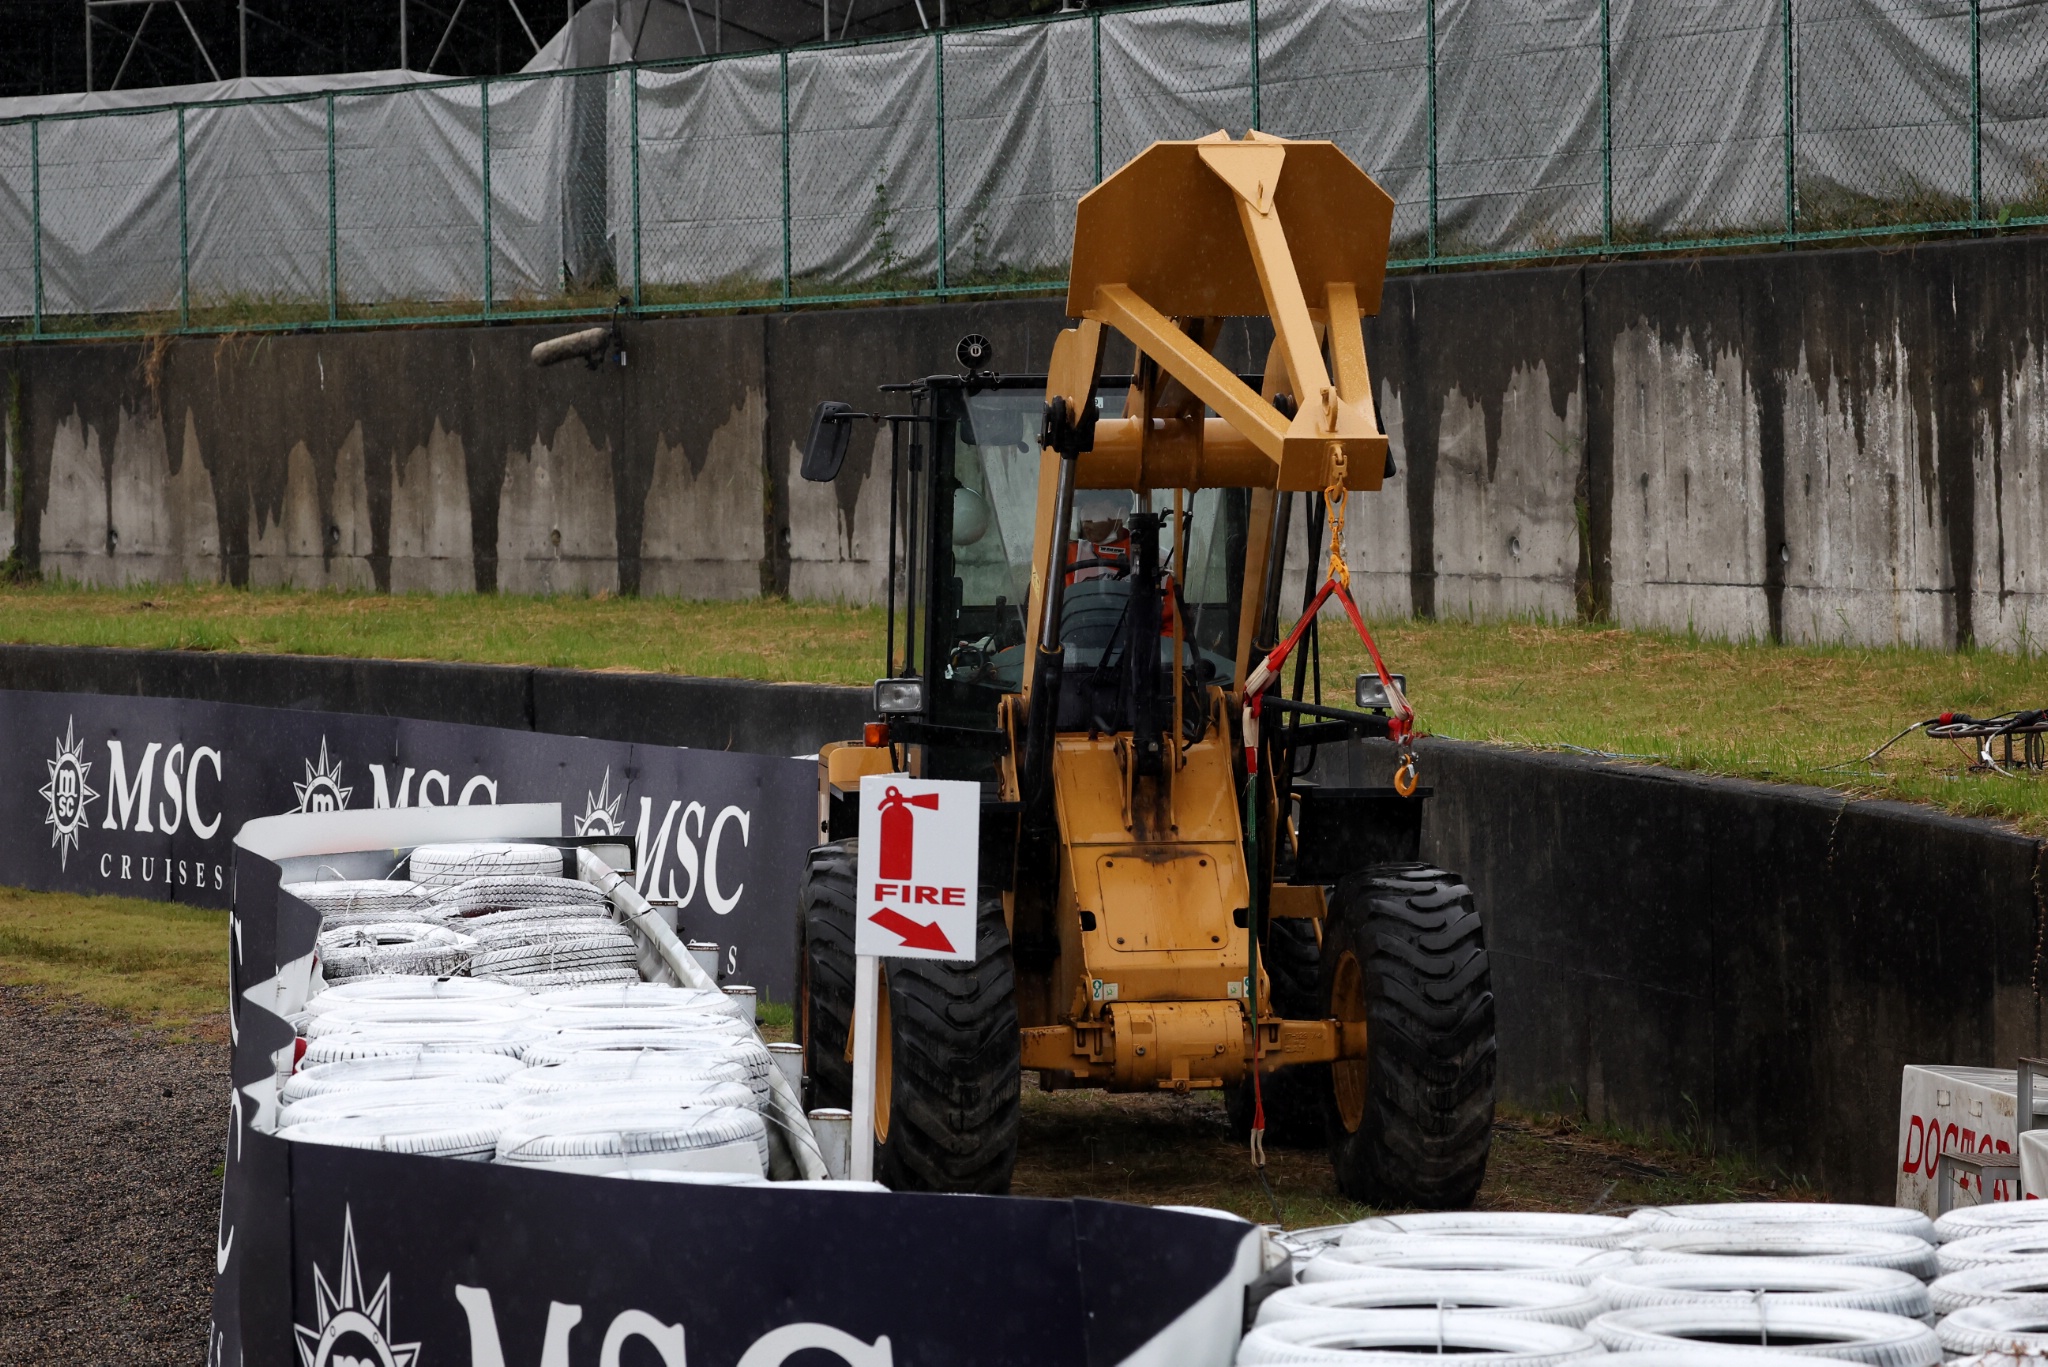 Suasana sirkuit - a sirkuit traktor. Kejuaraan Dunia Formula 1, Rd 18, Grand Prix Jepang, Suzuka, Japan, Race